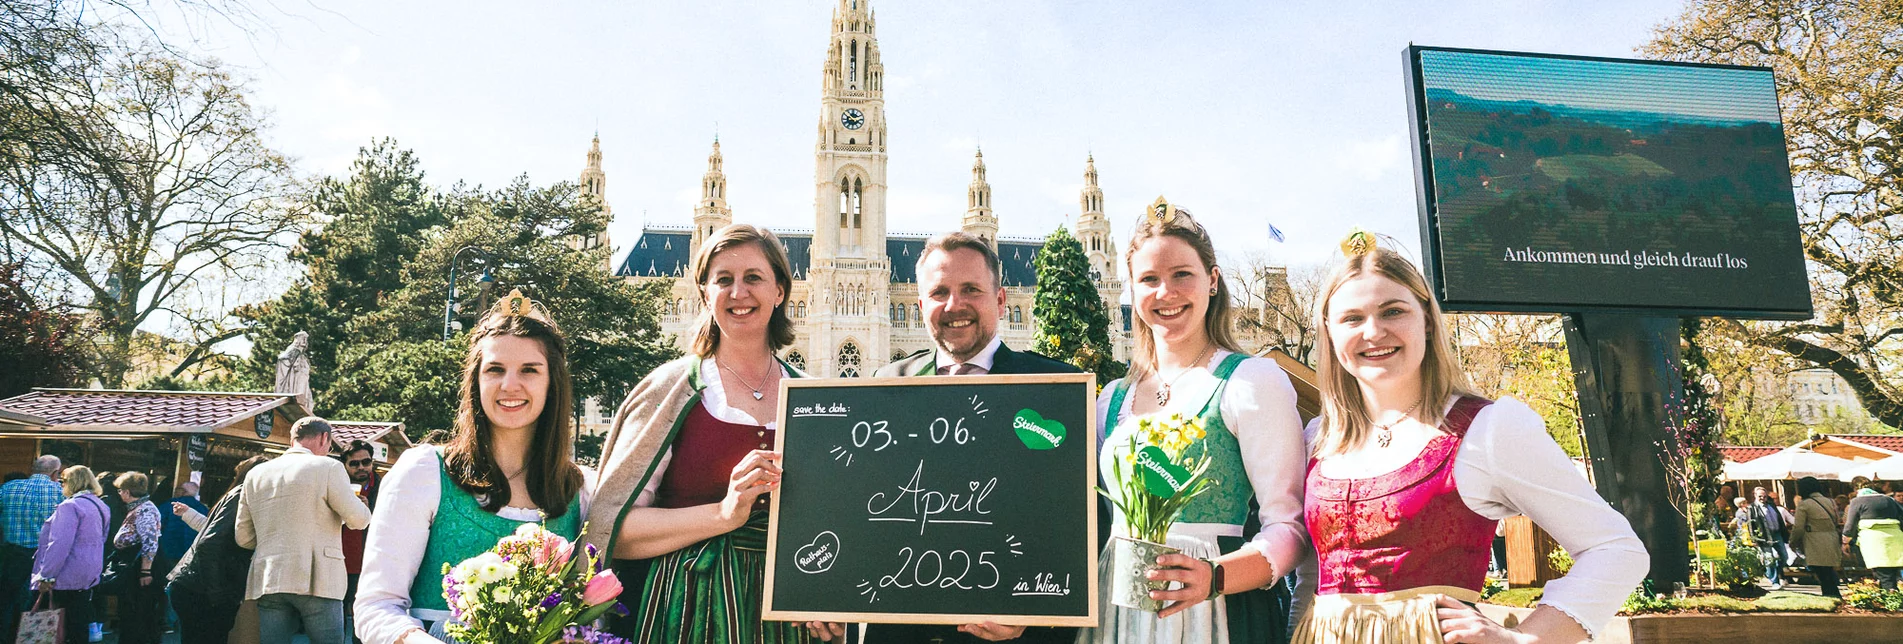 Wir freuen uns auf den Steiermark-Frühling 2025 von 3.-6. April 2025: Landesrätin Barbara Eibinger-Miedl und STG-GF Michael Feiertag mit den drei Weinhoheiten geben den 2025er-Termin bekannt.  | © STG | WSI Agentur